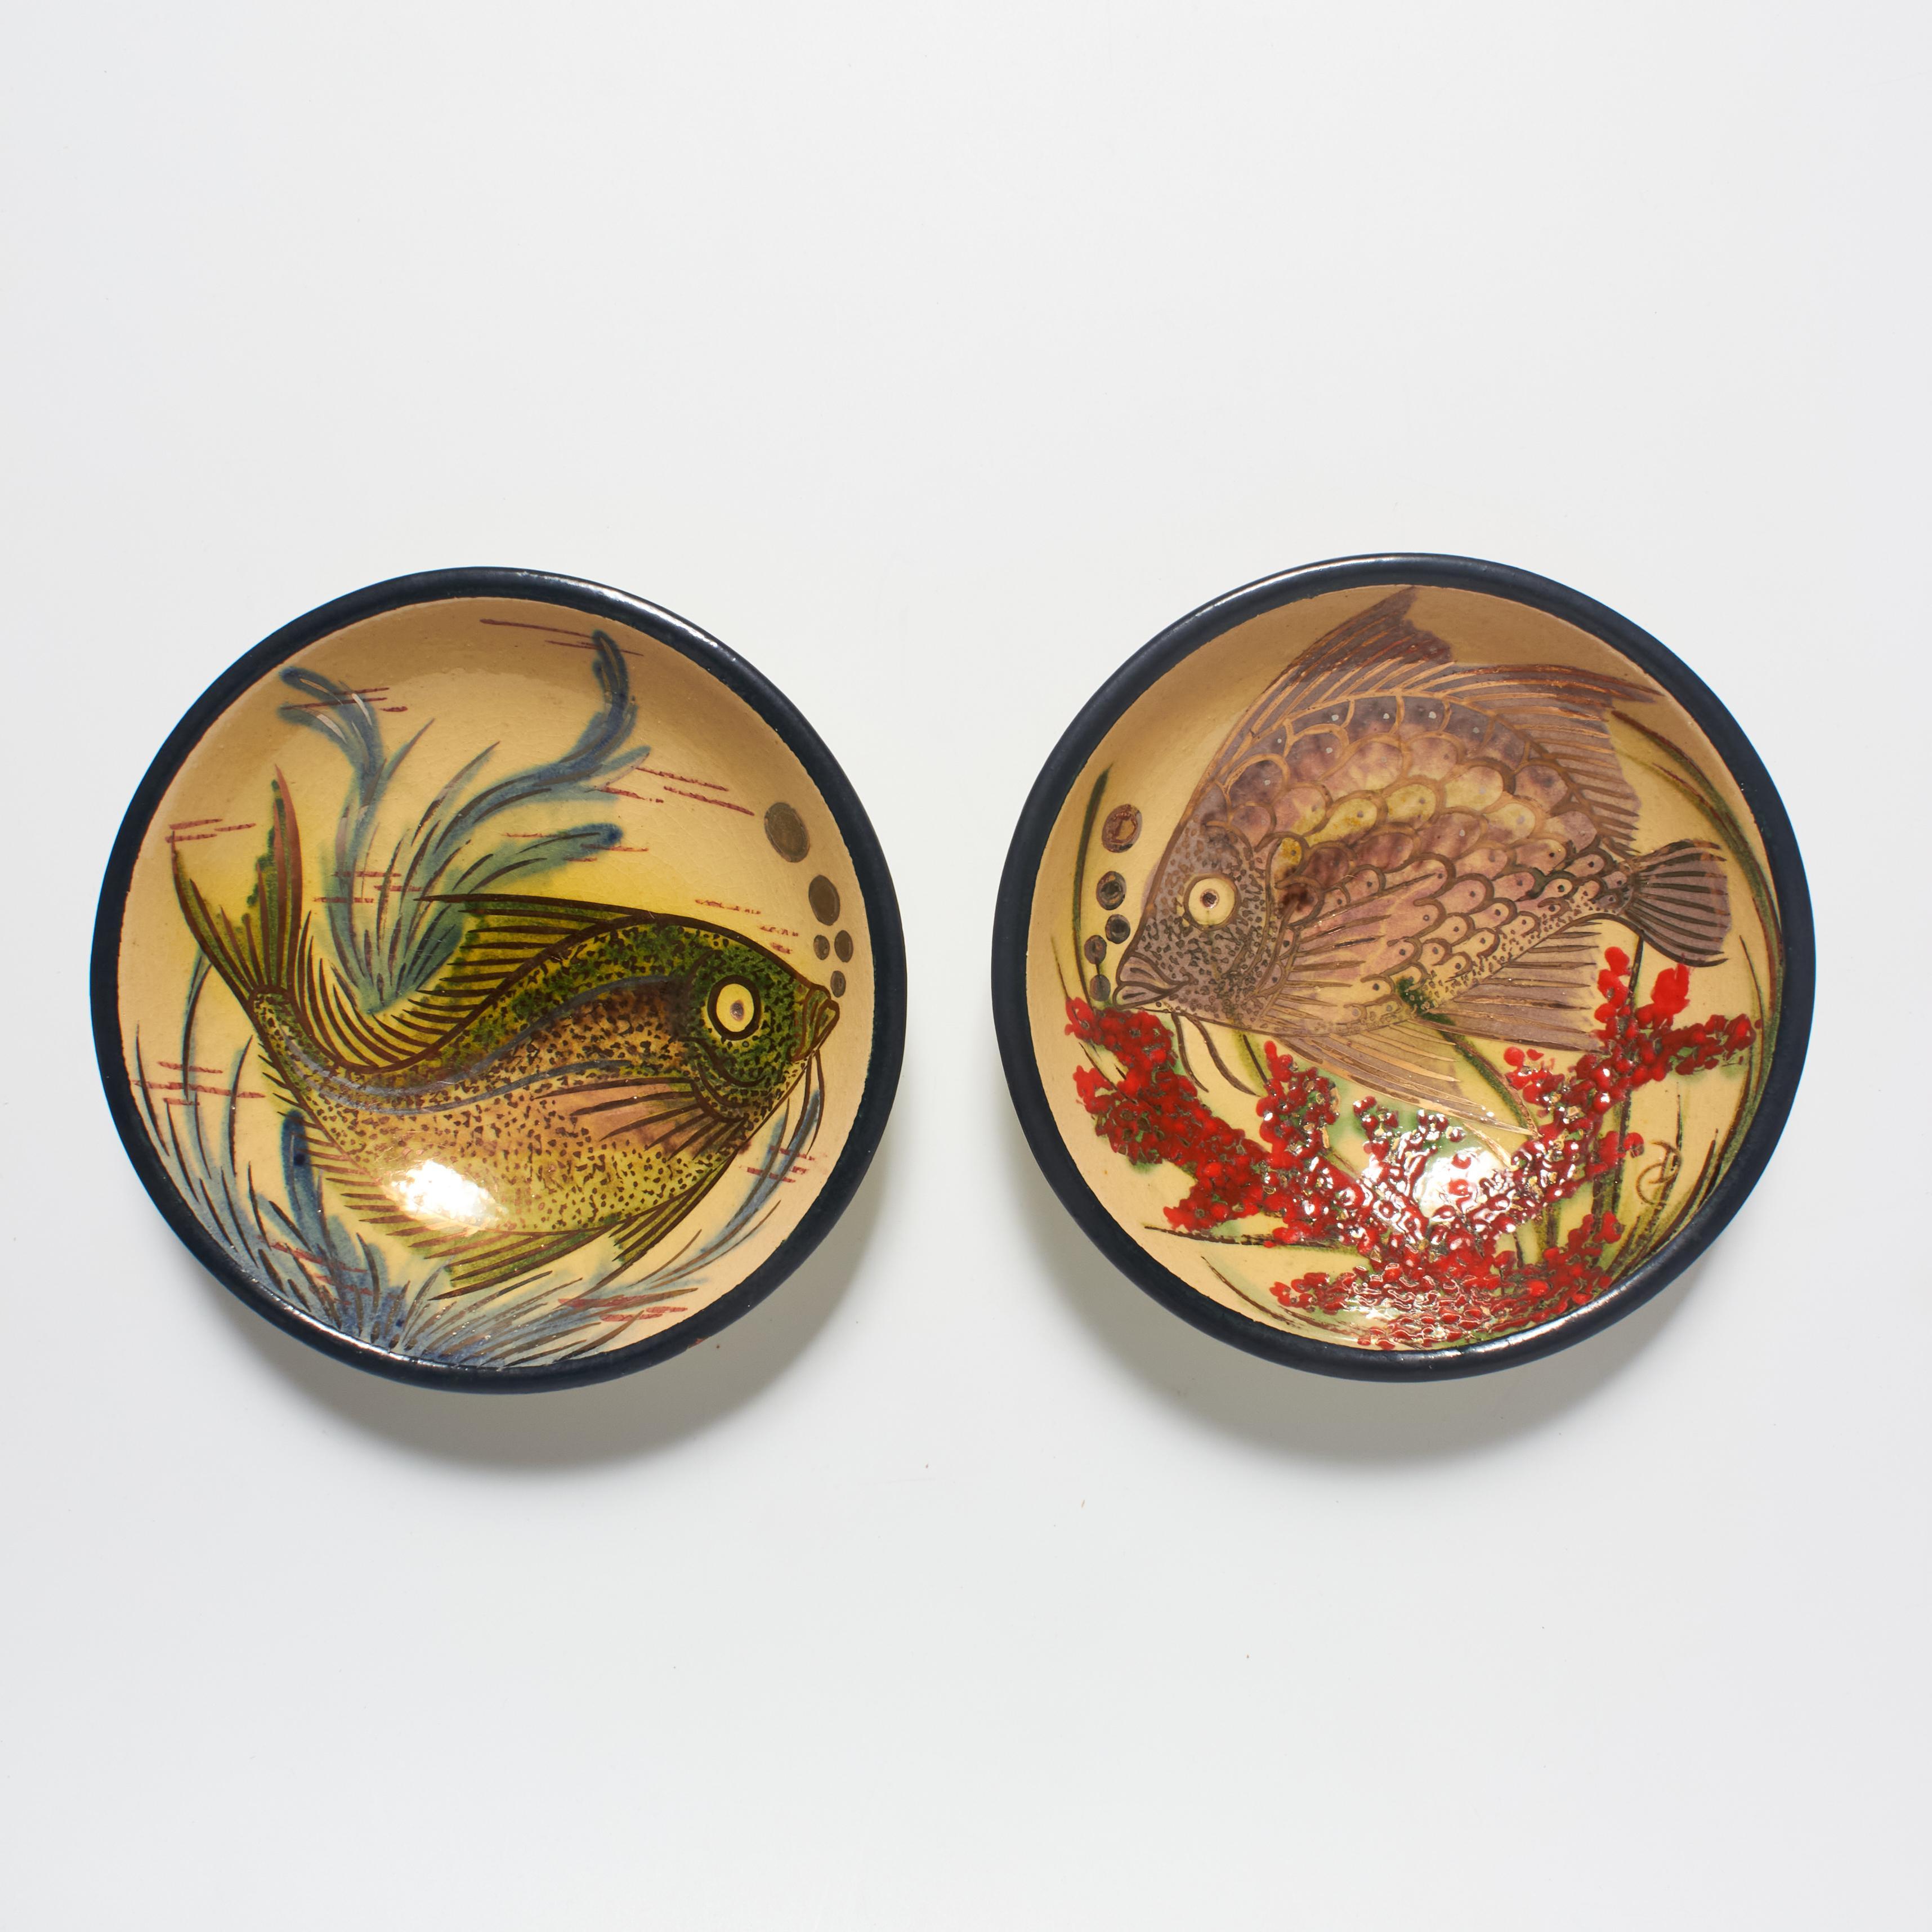 Plongez dans l'univers enchanteur de l'artiste catalan Diaz Costa avec notre paire d'assiettes vintage en céramique peintes à la main, chacune présentant un motif de poisson captivant. Artistics, ces assiettes témoignent de la capacité unique de